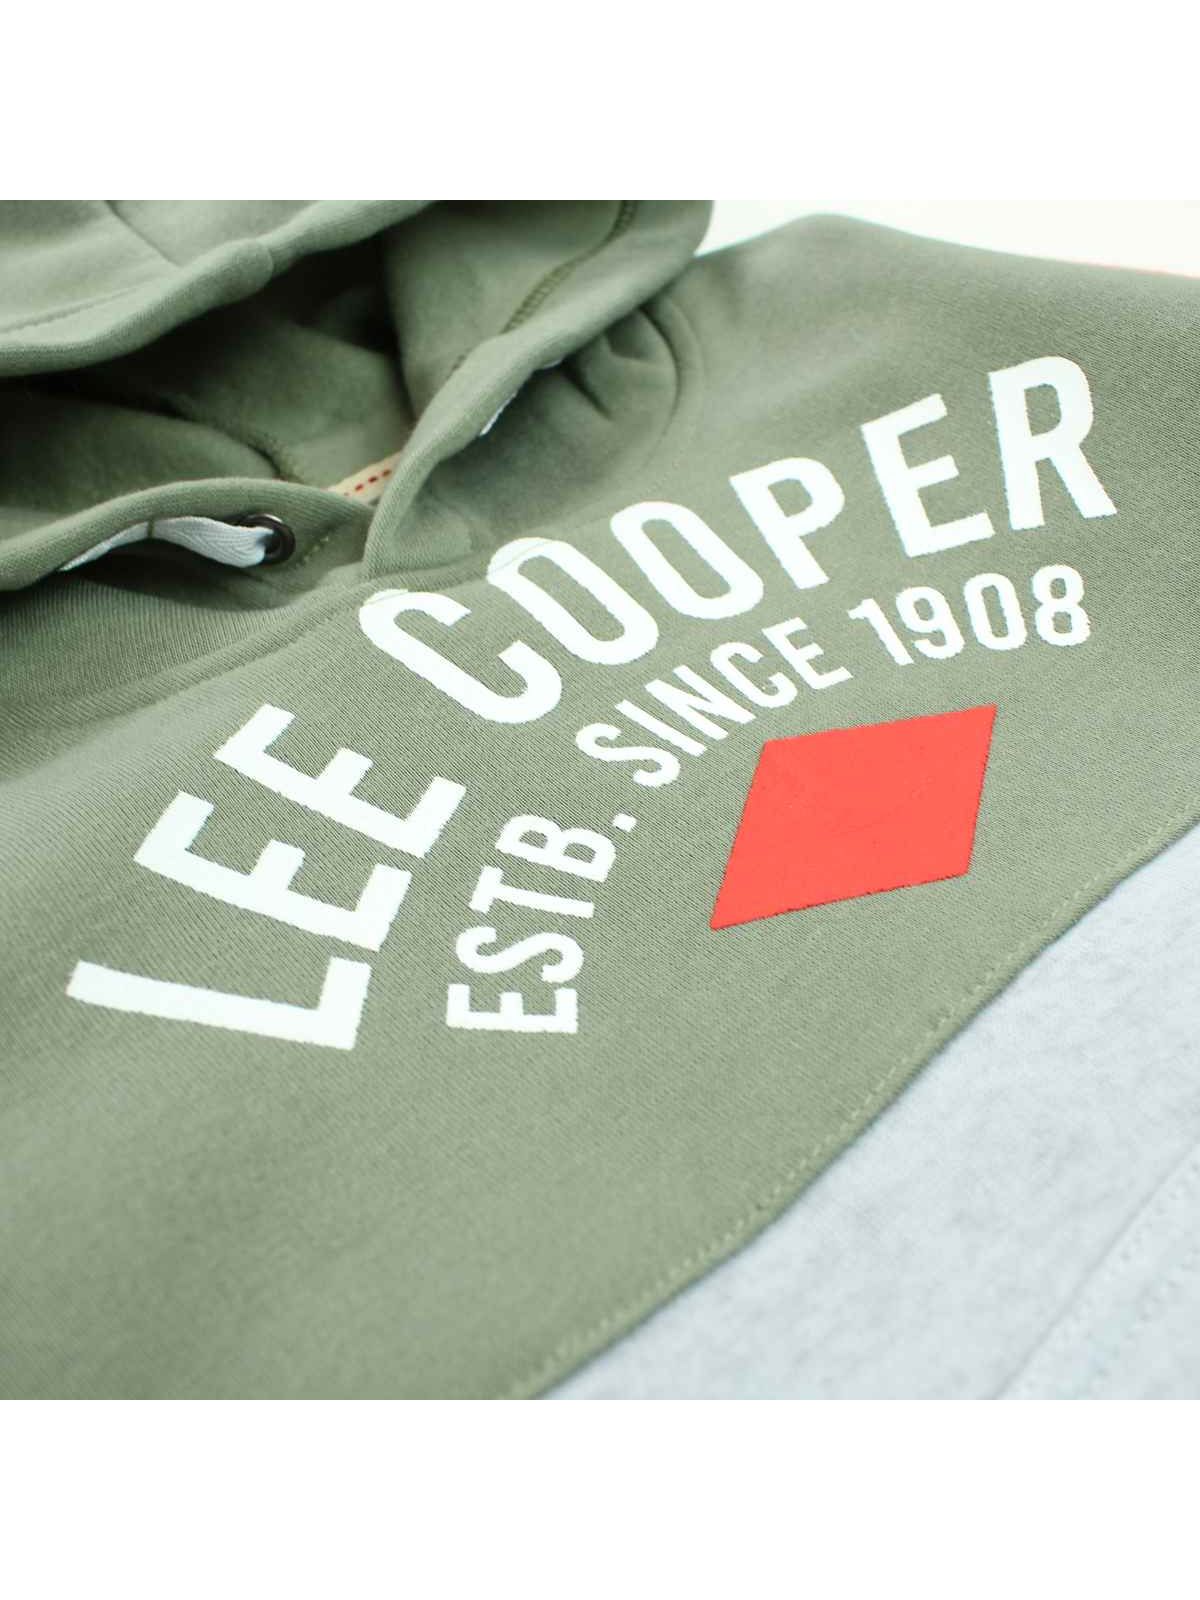 Jogging capuche Lee Cooper